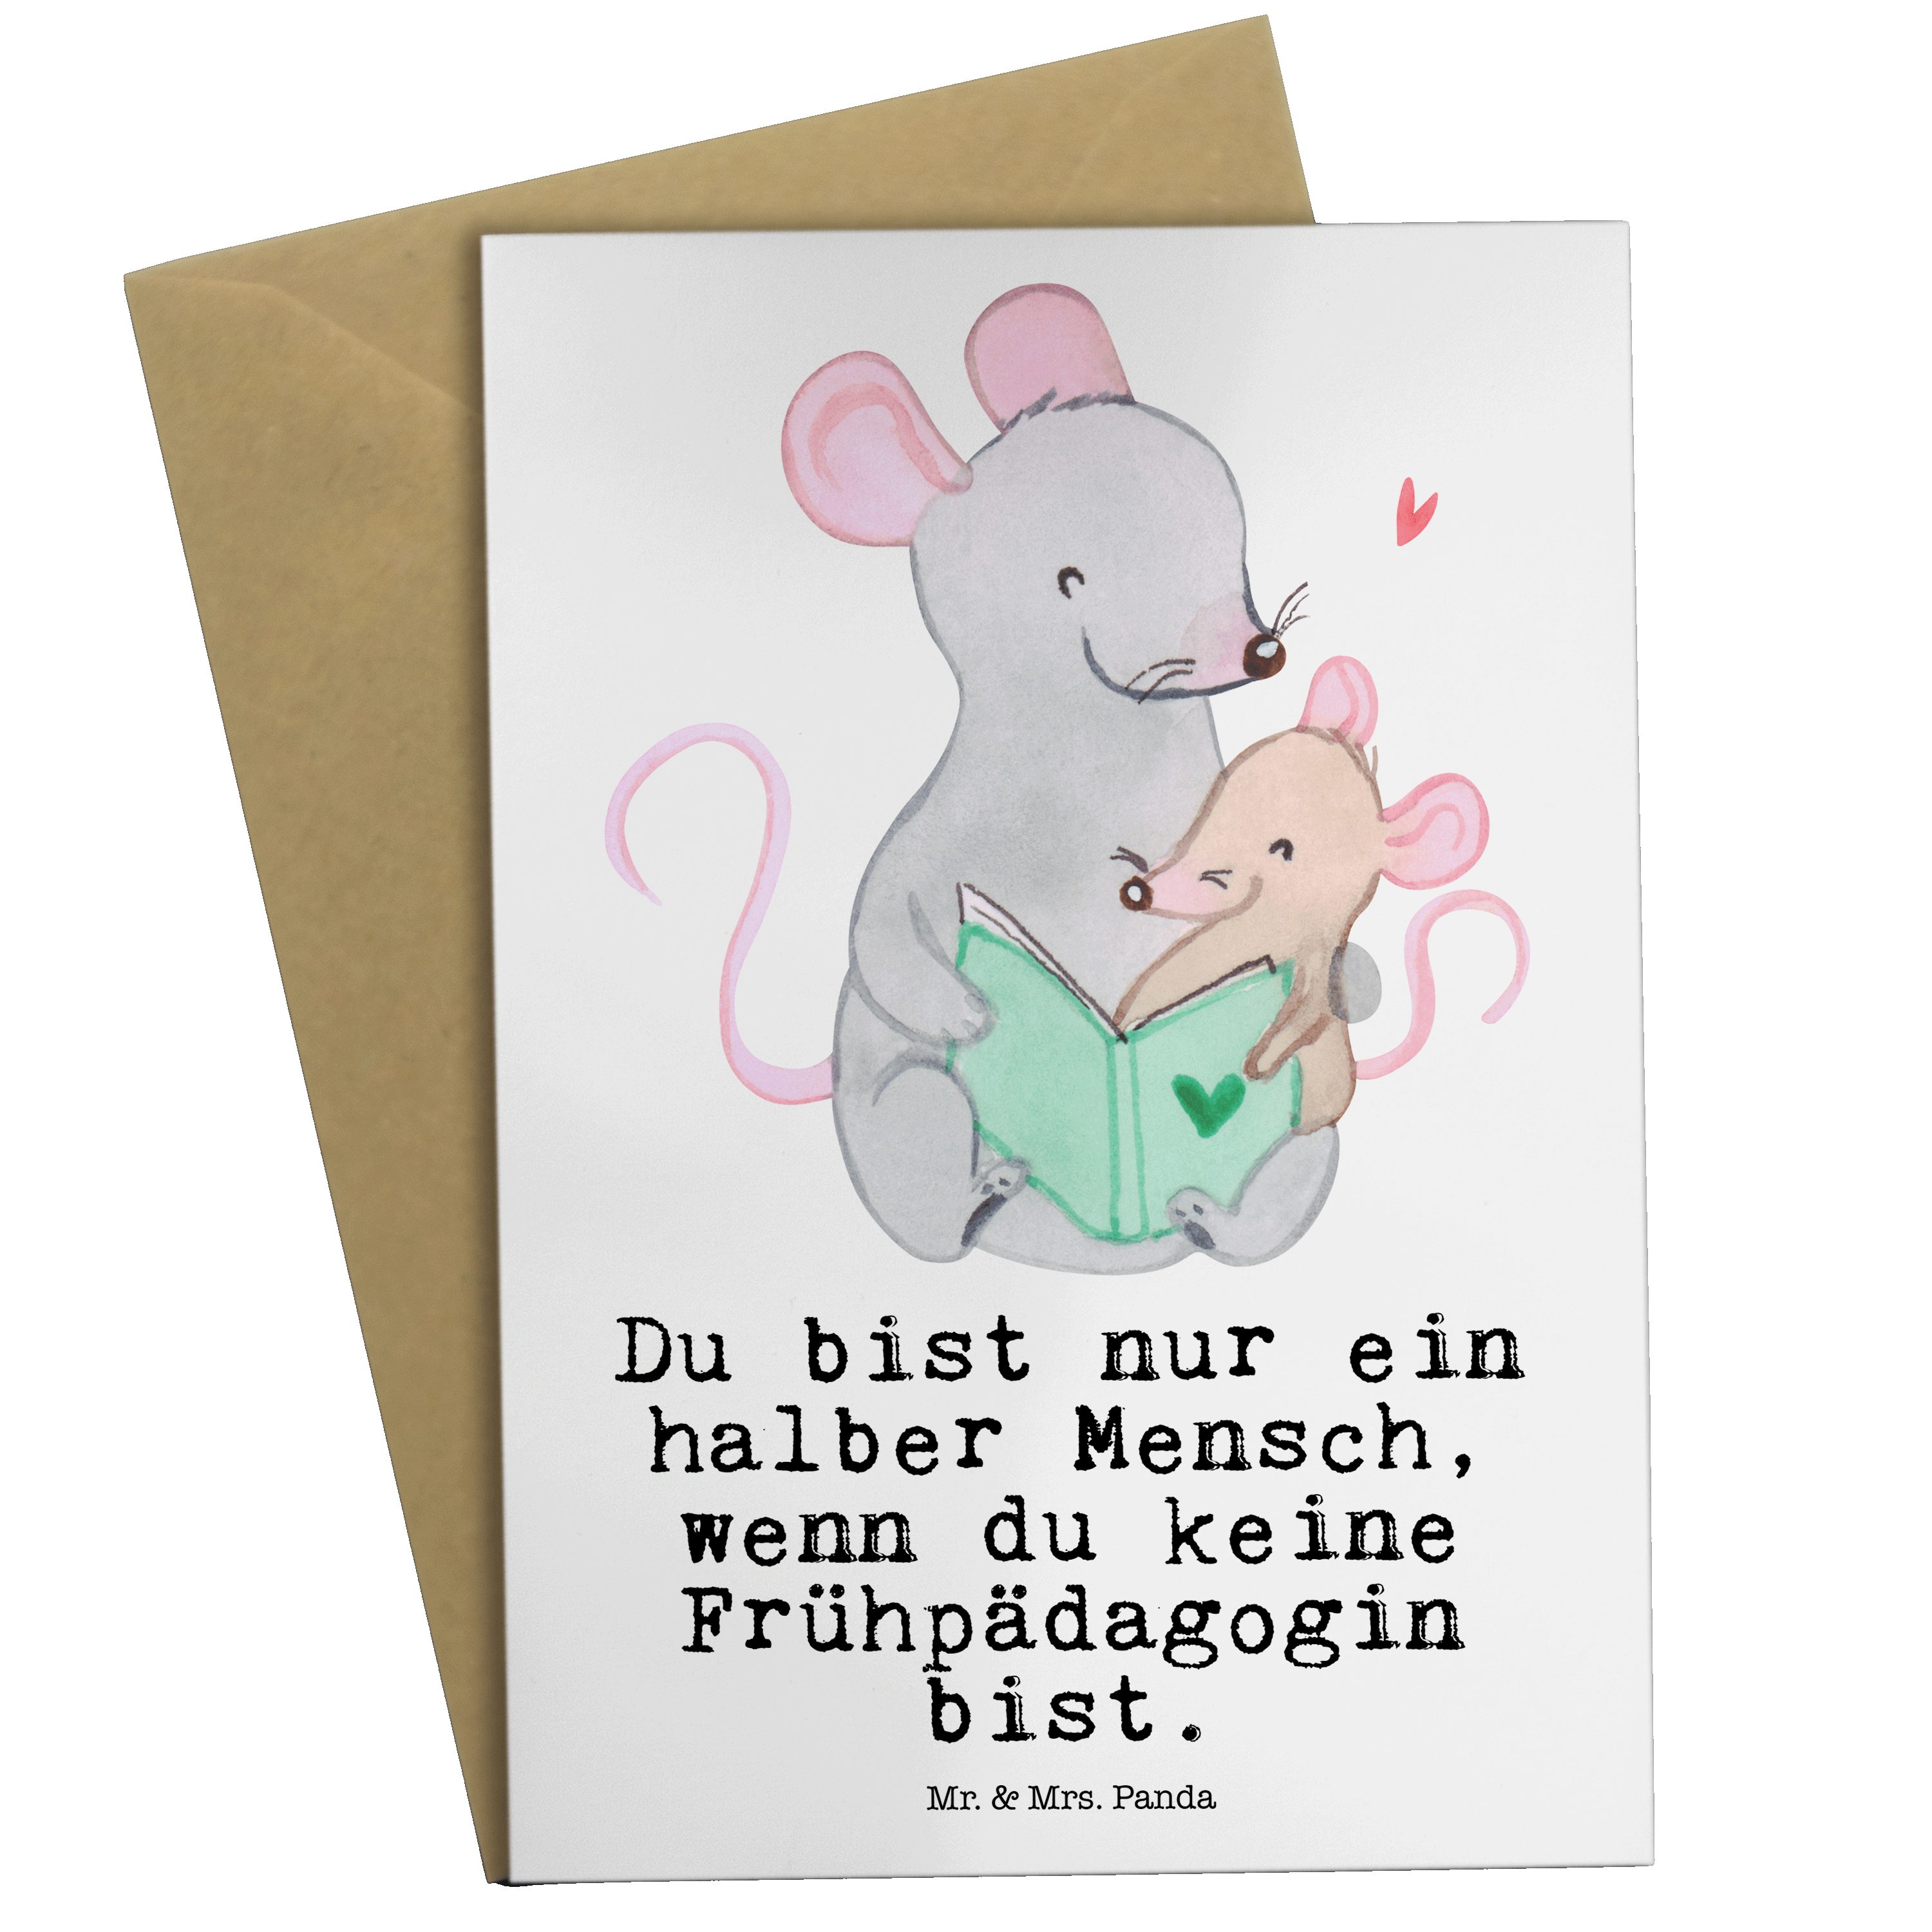 Mr. & Mrs. Panda Grußkarte Frühpädagogin mit Herz - Weiß - Geschenk, Jubiläum, Glückwunschkarte